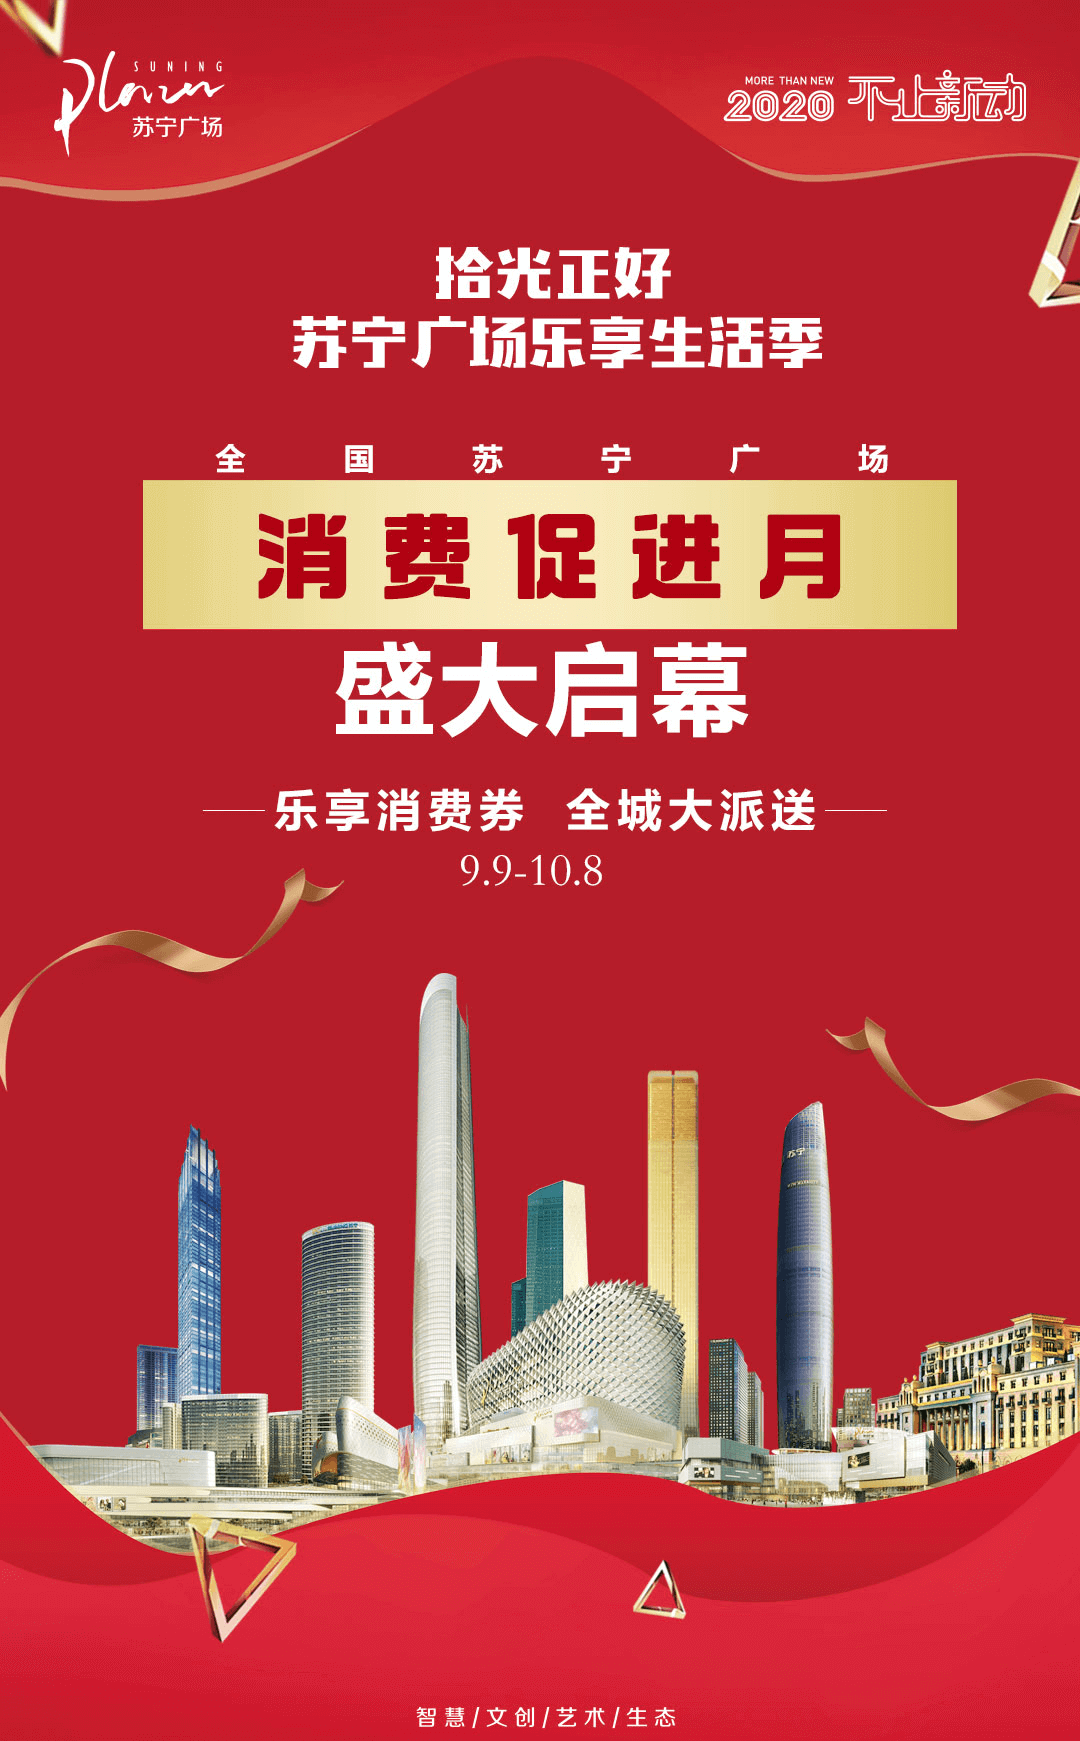 苏宁广场消费促进月正式启动 千万消费券全城派送